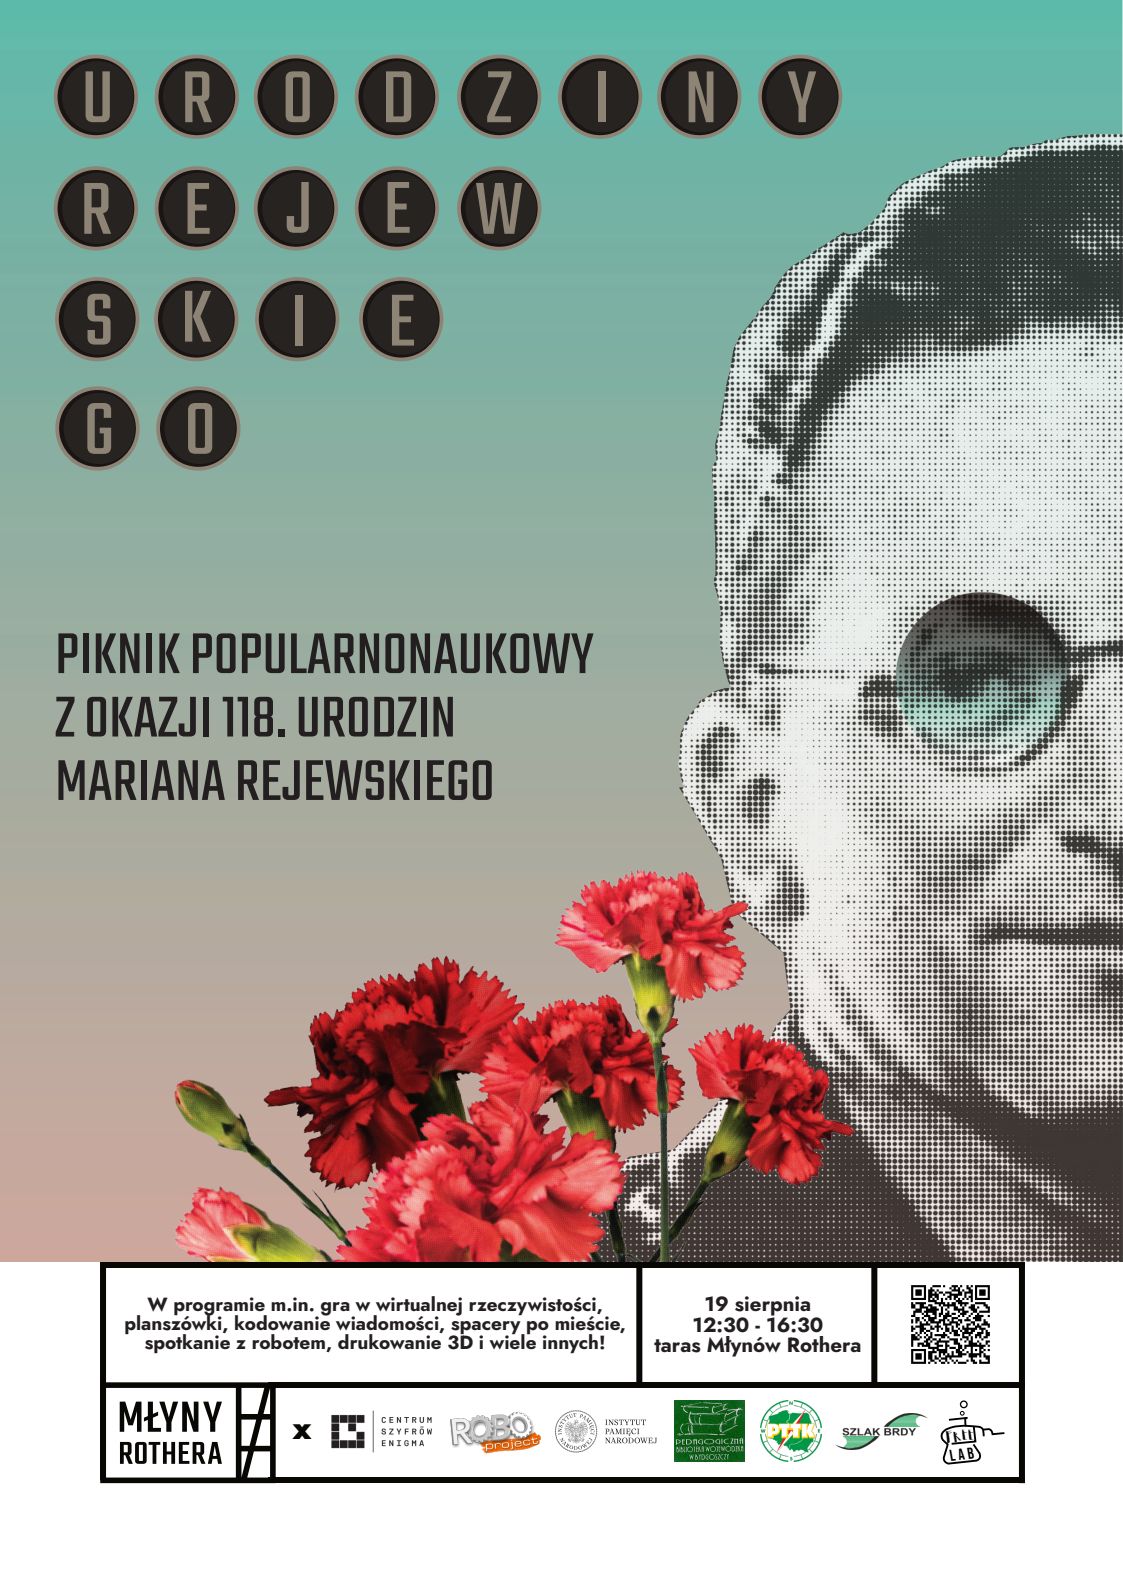 Plakat pikniku popularnonaukowego z okazji 118. rocznicy urodzin Mariana Rejewskiego z wizerunkiem kryptologa i wiązanką goździków.